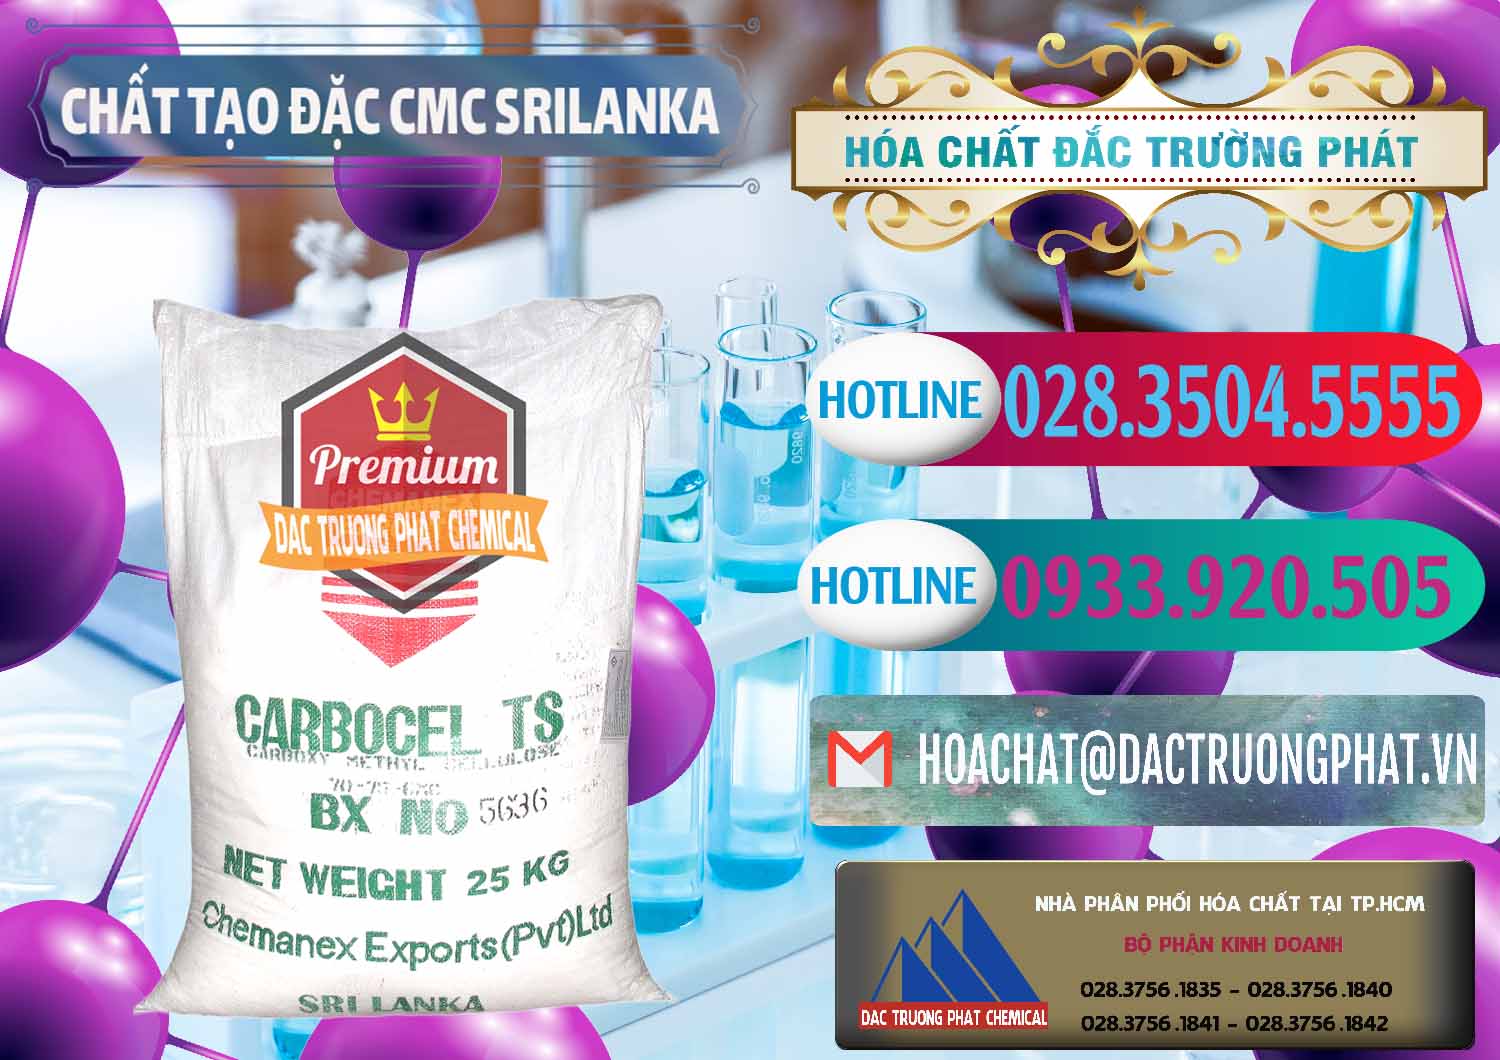 Đơn vị chuyên kinh doanh ( bán ) Chất Tạo Đặc CMC - Carboxyl Methyl Cellulose Srilanka - 0045 - Nơi phân phối & kinh doanh hóa chất tại TP.HCM - truongphat.vn